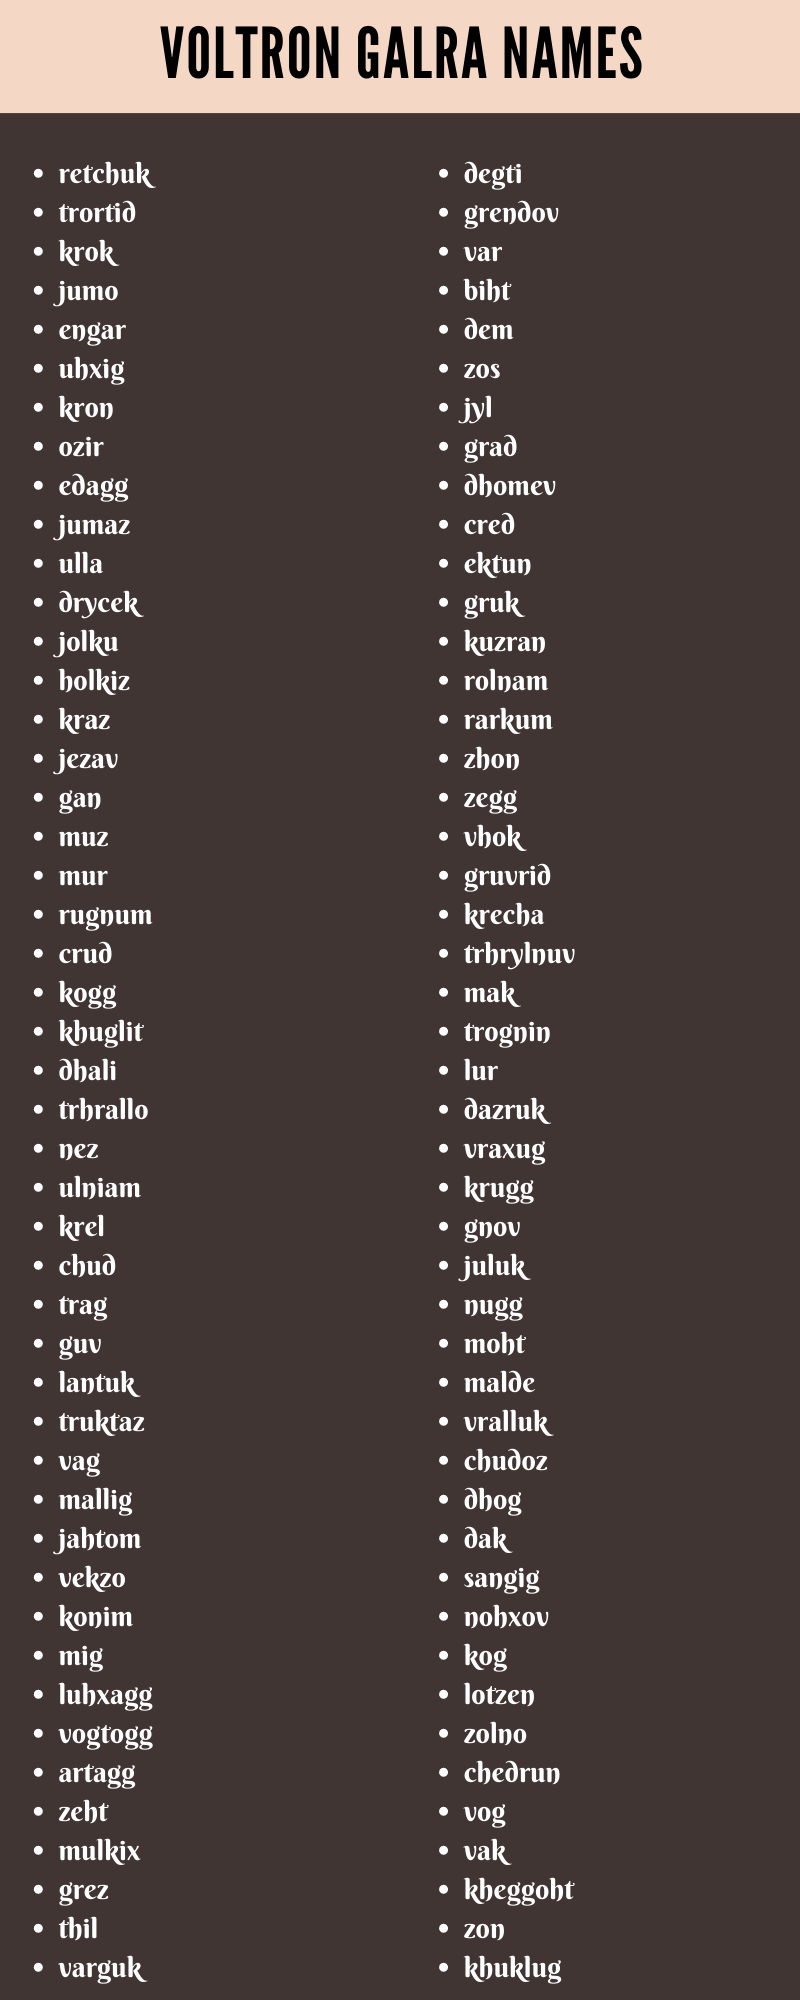 Voltron Galra Names